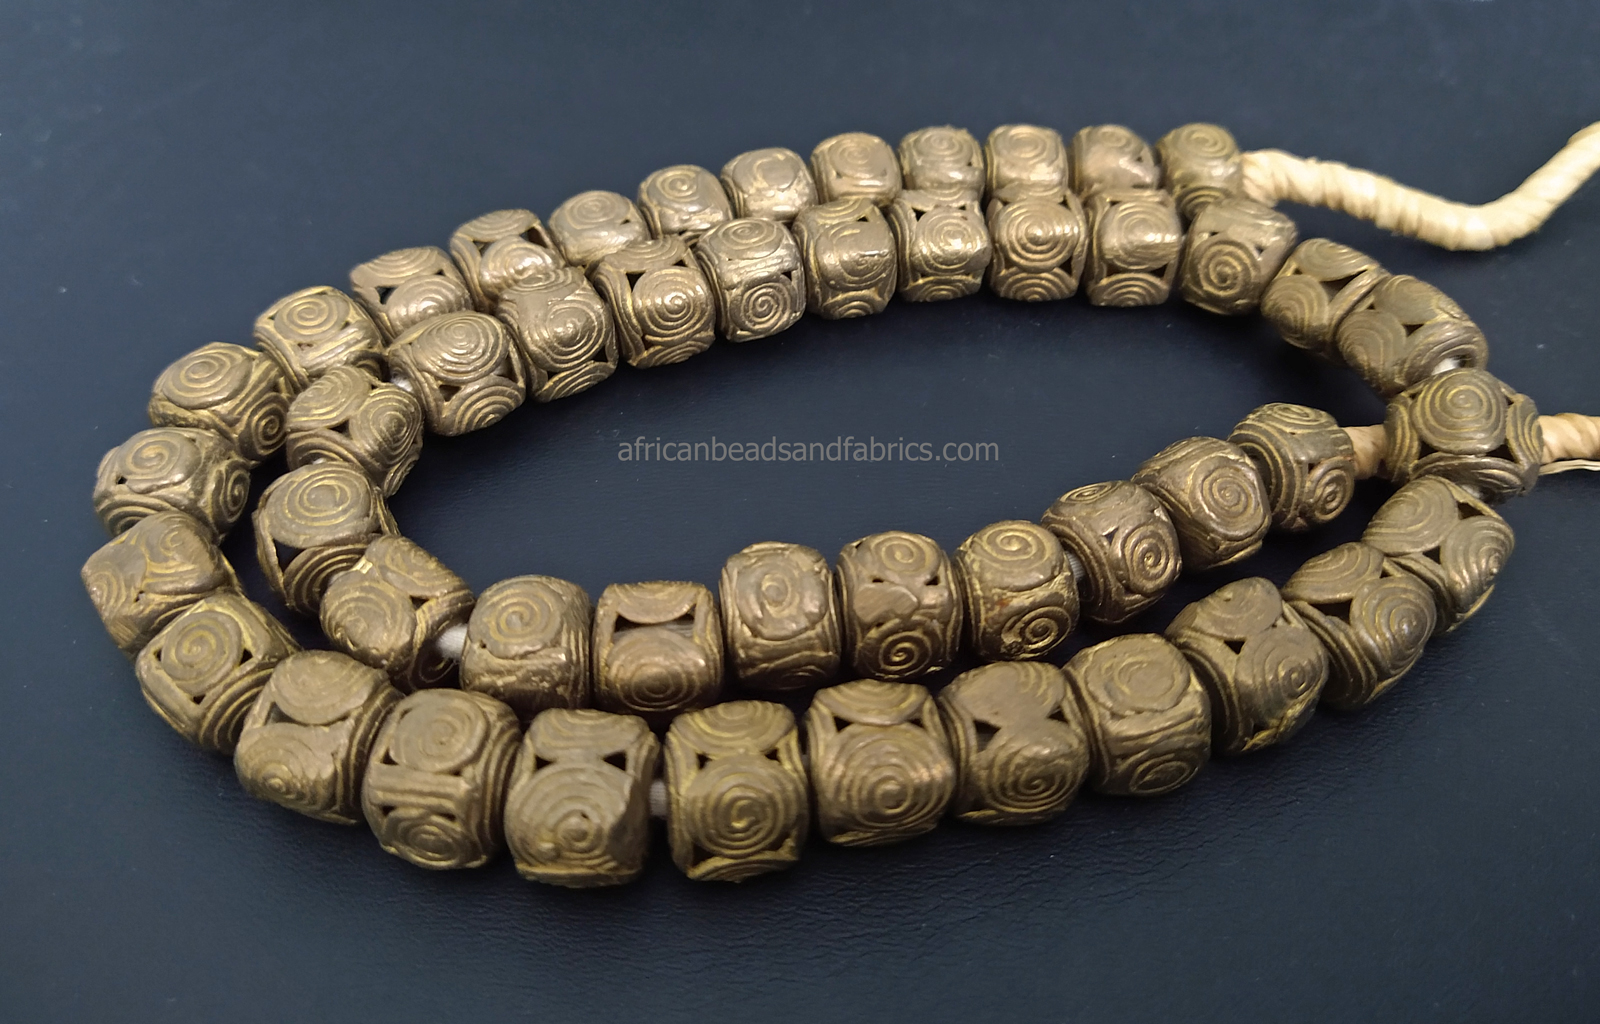 African-Brass-Beads-Cuboids-spiral-pattern10-11mm